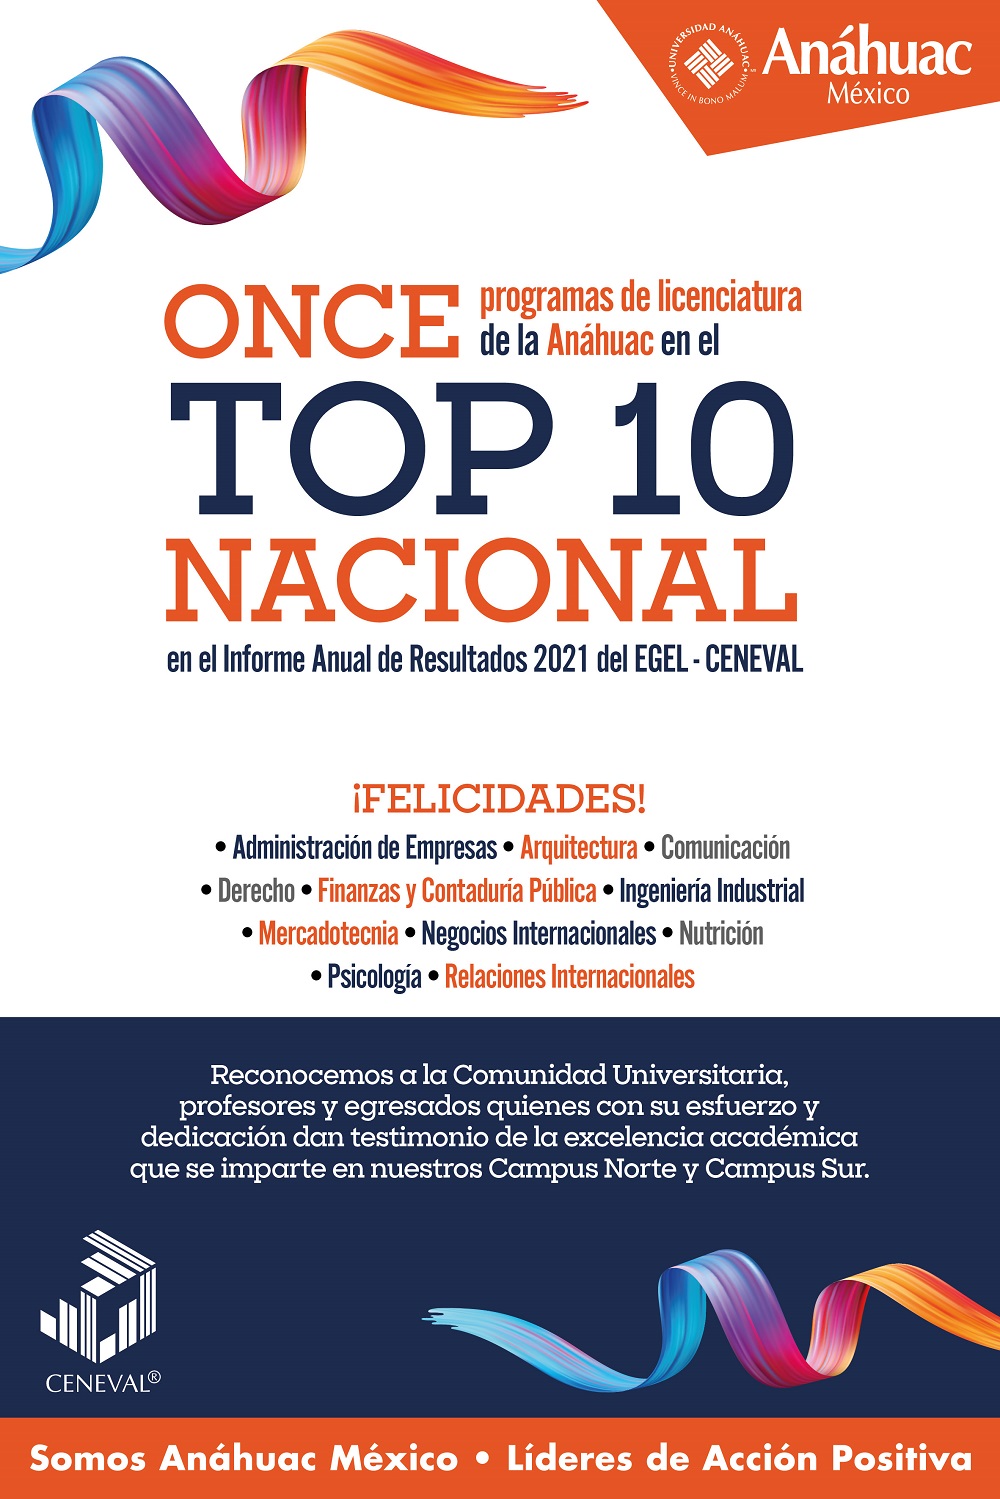 Once licenciaturas de la Anáhuac en el top ten nacional del Informe Anual de Resultados 2021 del EGEL